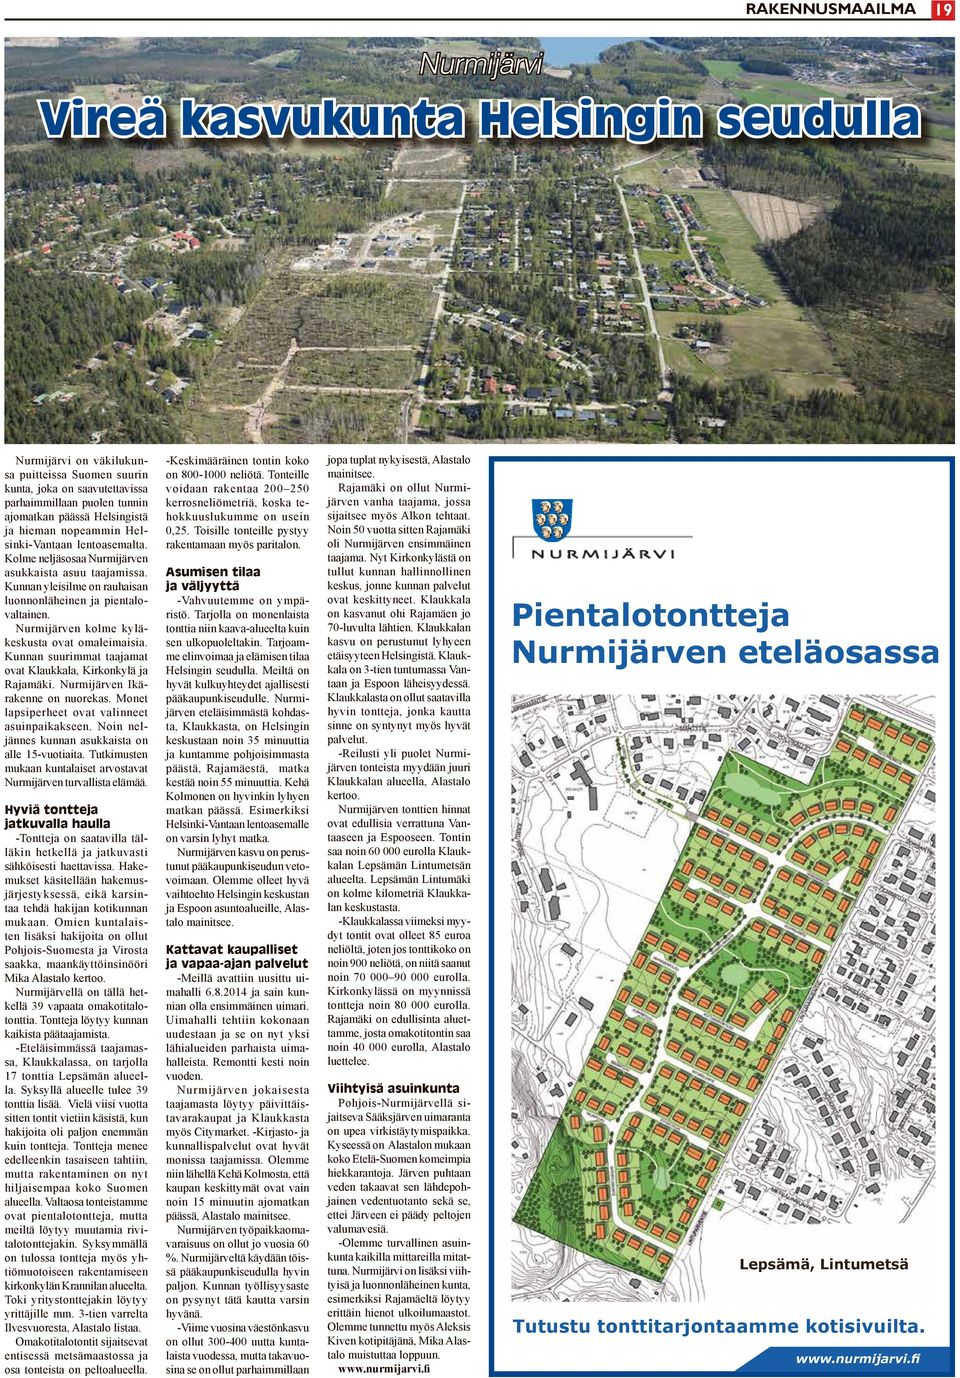 Nurmijärven kolme kyläkeskusta ovat omaleimaisia. Kunnan suurimmat taajamat ovat Klaukkala, Kirkonkylä ja Rajamäki. Nurmijärven Ikärakenne on nuorekas.